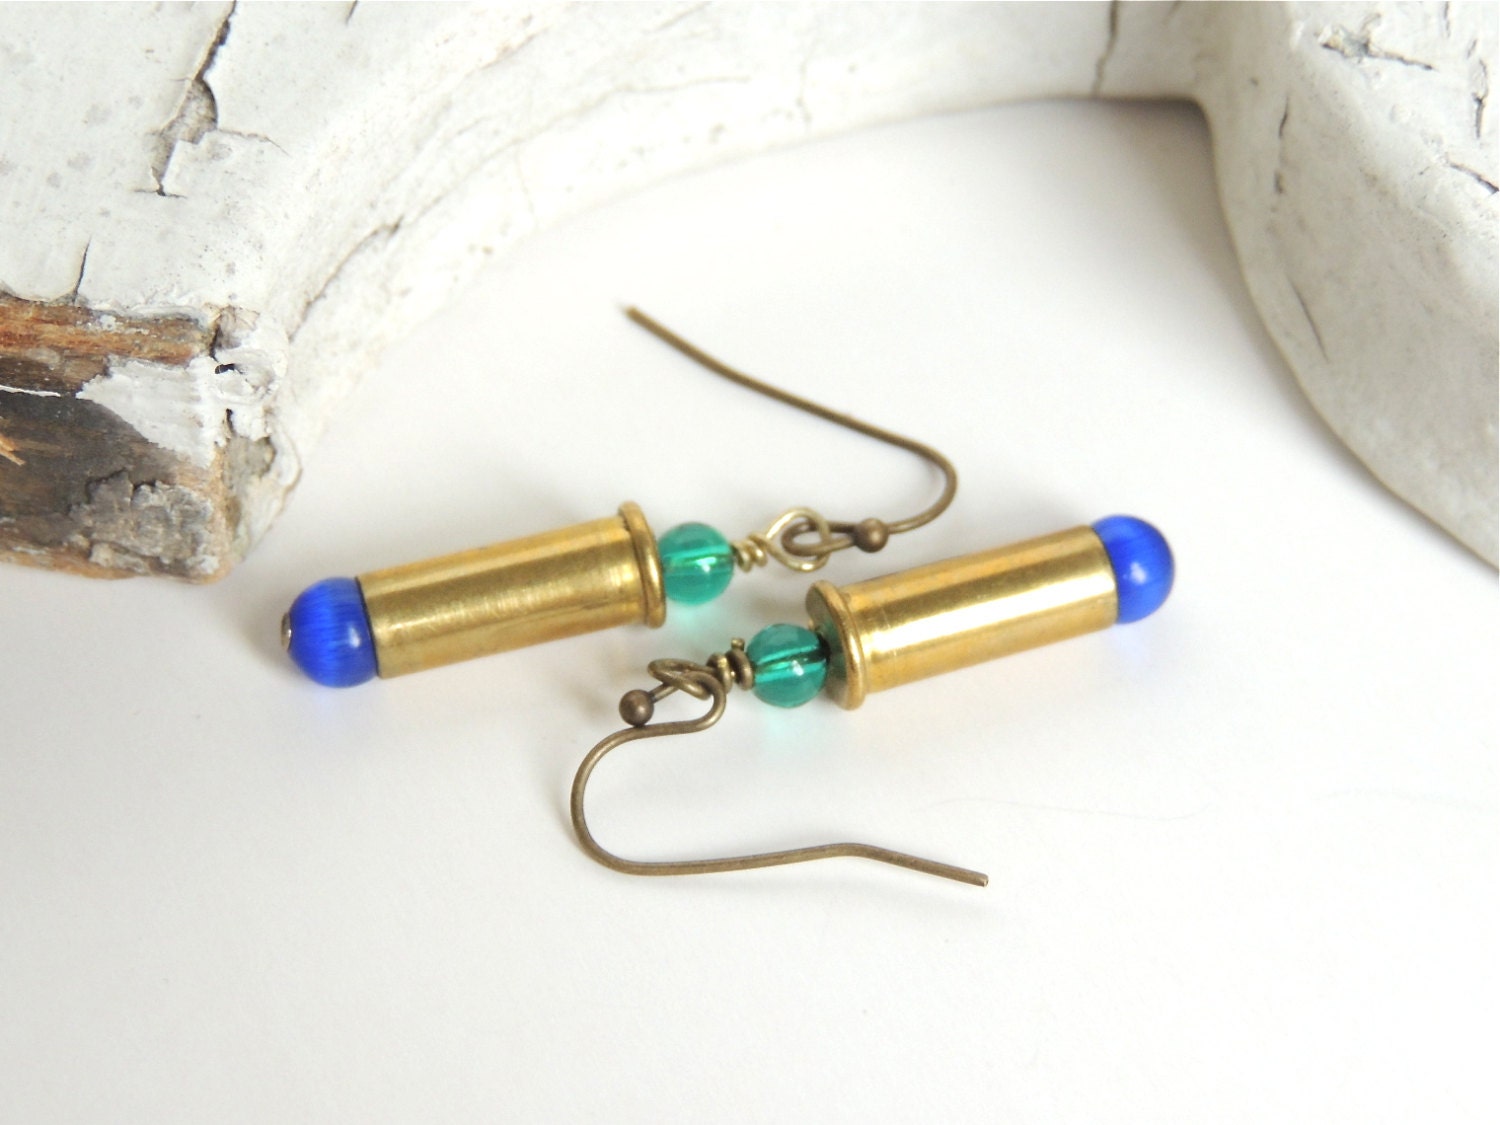 Bullet Earrings .22 caliber brass bullets bullet jewelry | Etsy